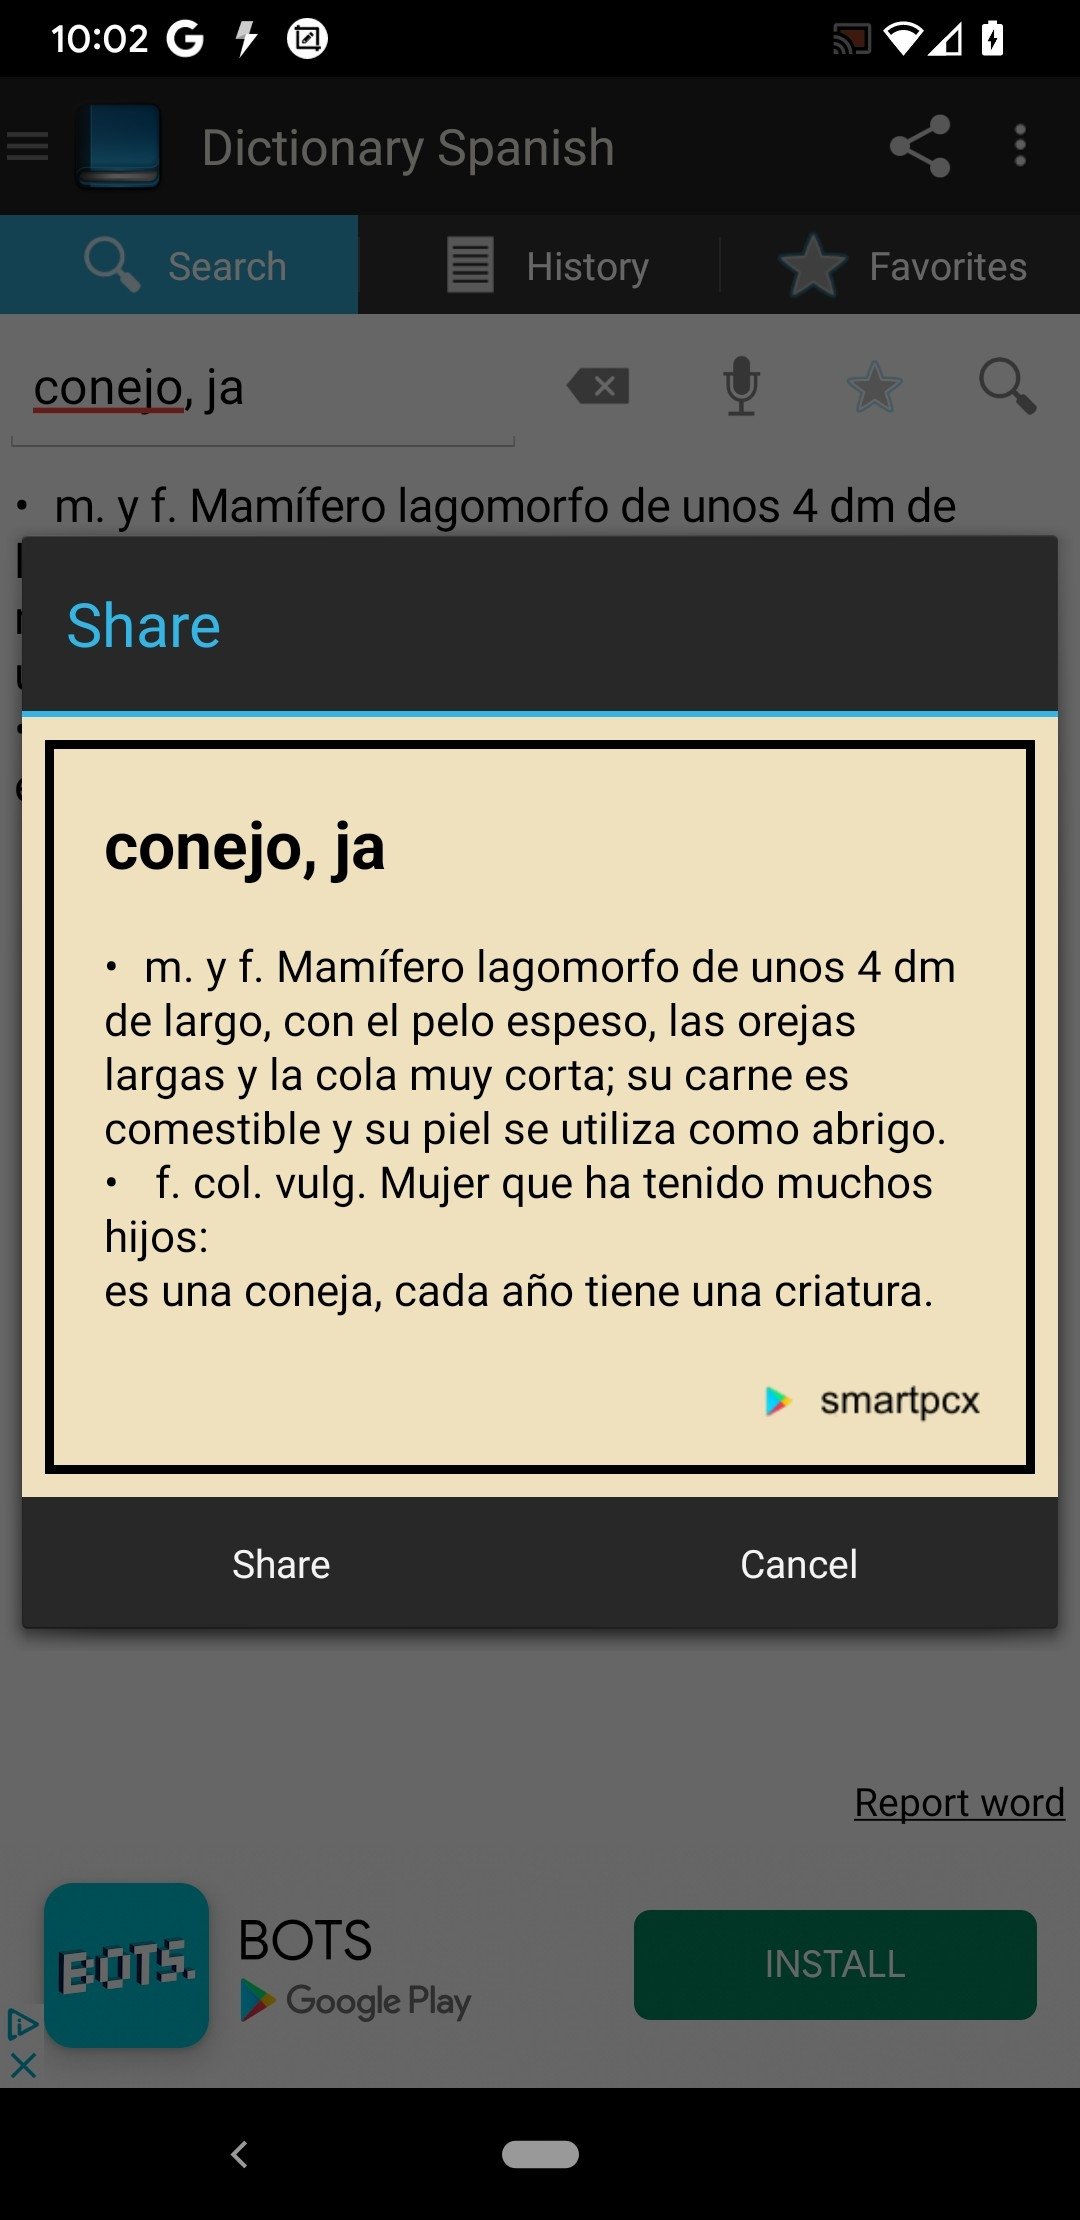 Diccionario Jurídico en Españo - Apps on Google Play